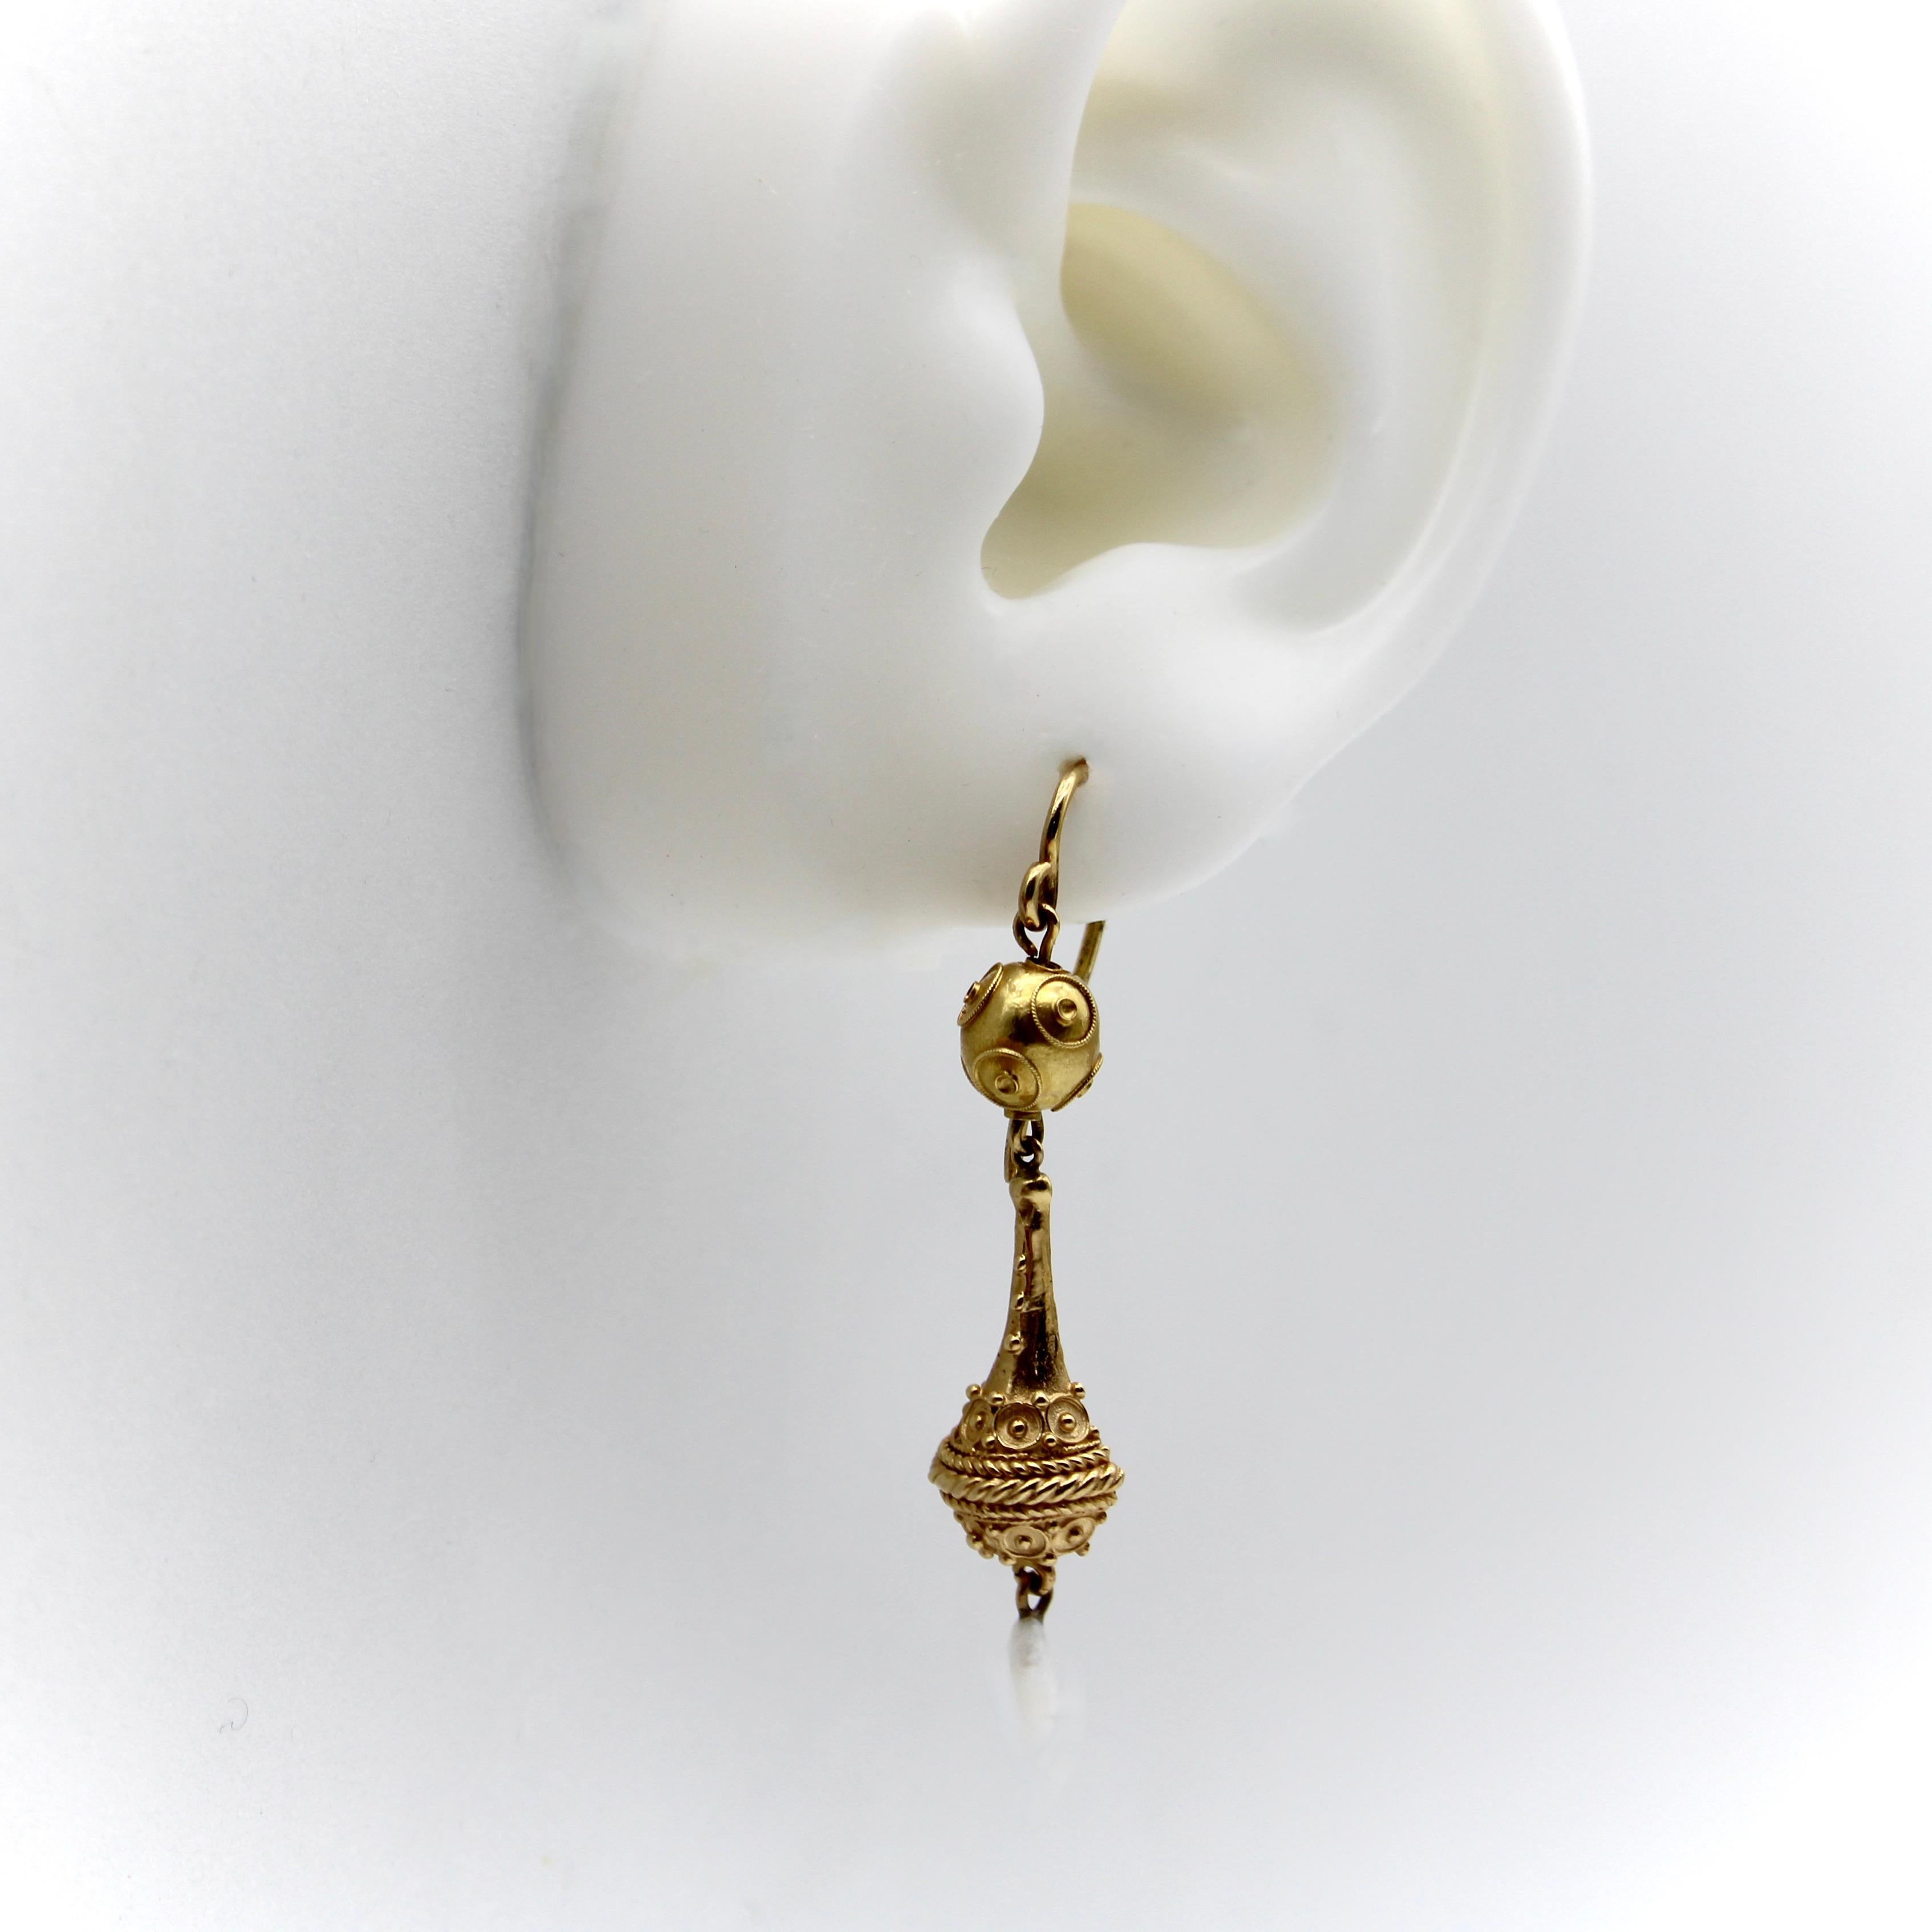 Dies ist ein atemberaubendes Paar 14k Etruscan Revival Tropfen Ohrringe mit komplizierten Gold Details und eine zarte Mississippi Fluss Perle baumelnden Element. Die Form der Ohrringe ähnelt einer länglichen Urne, die an einer etruskischen